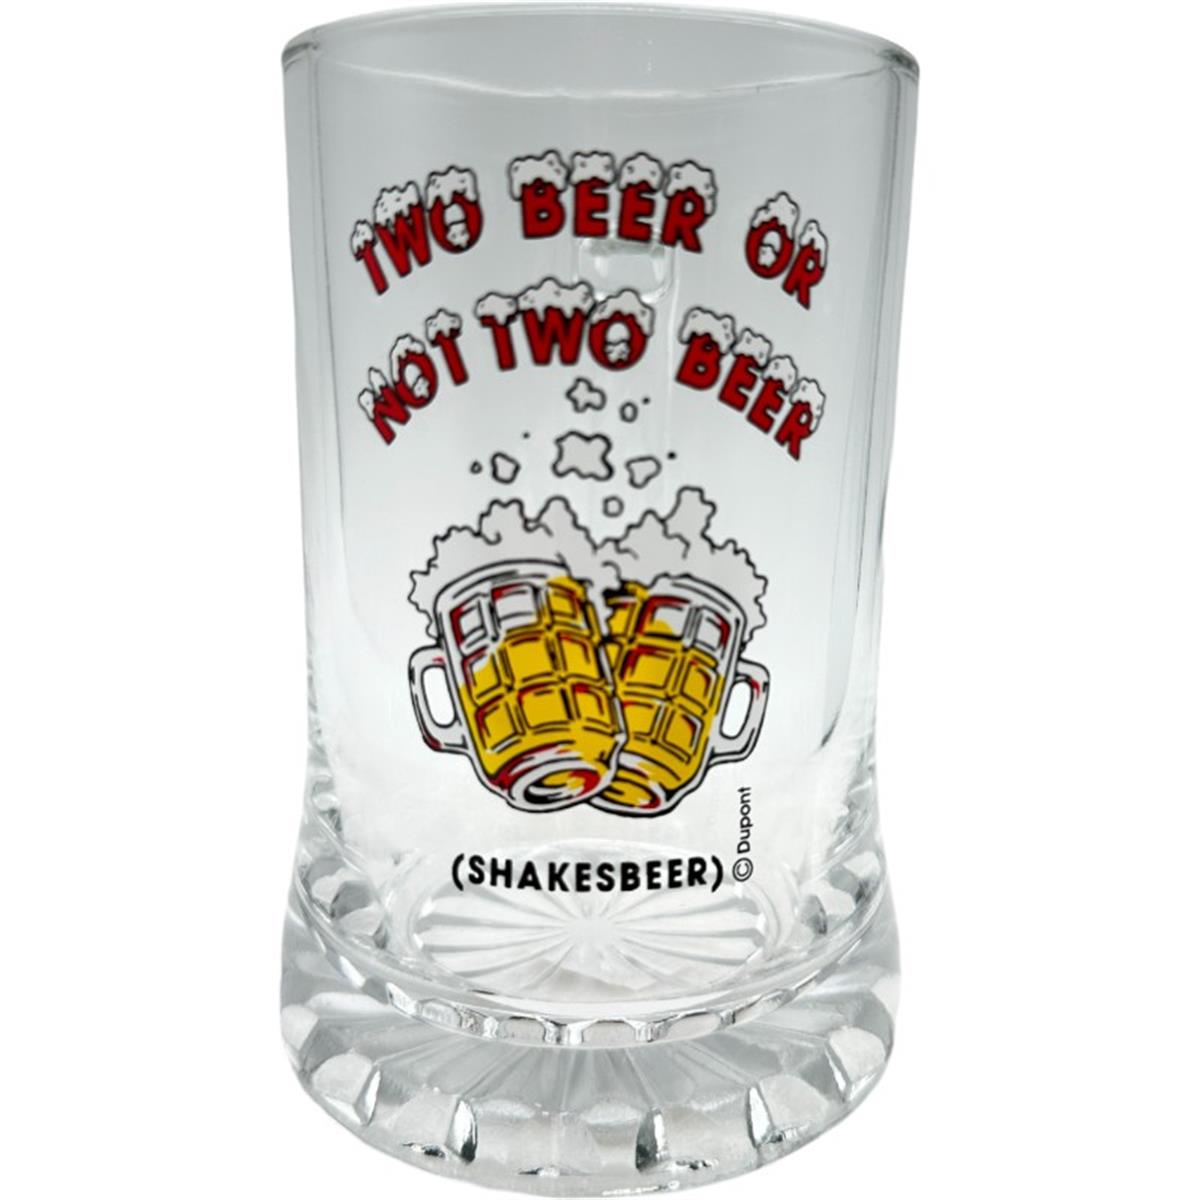 Beerglass G18 0,4 Two Beer